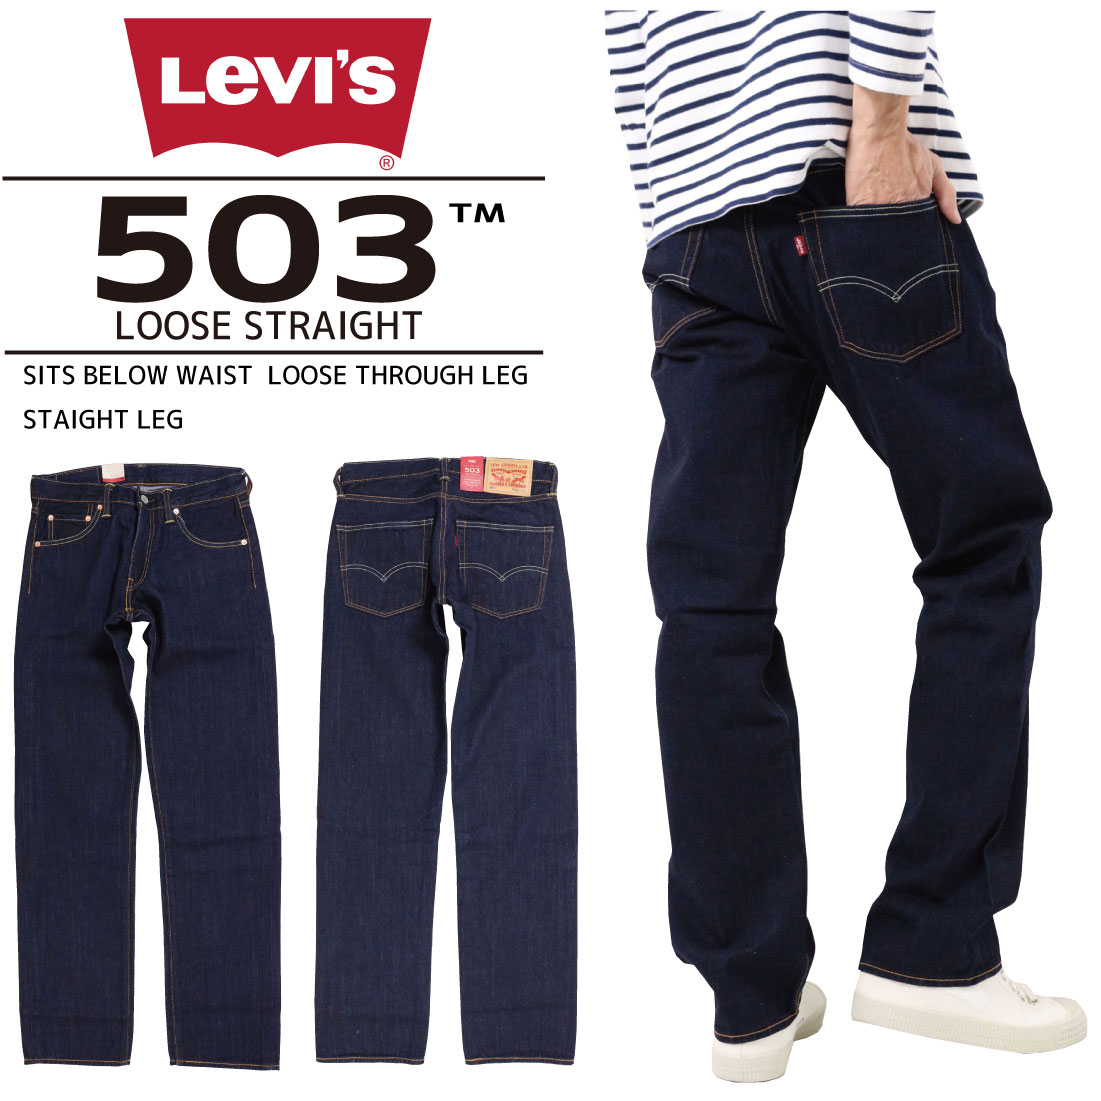 levi 503 jeans